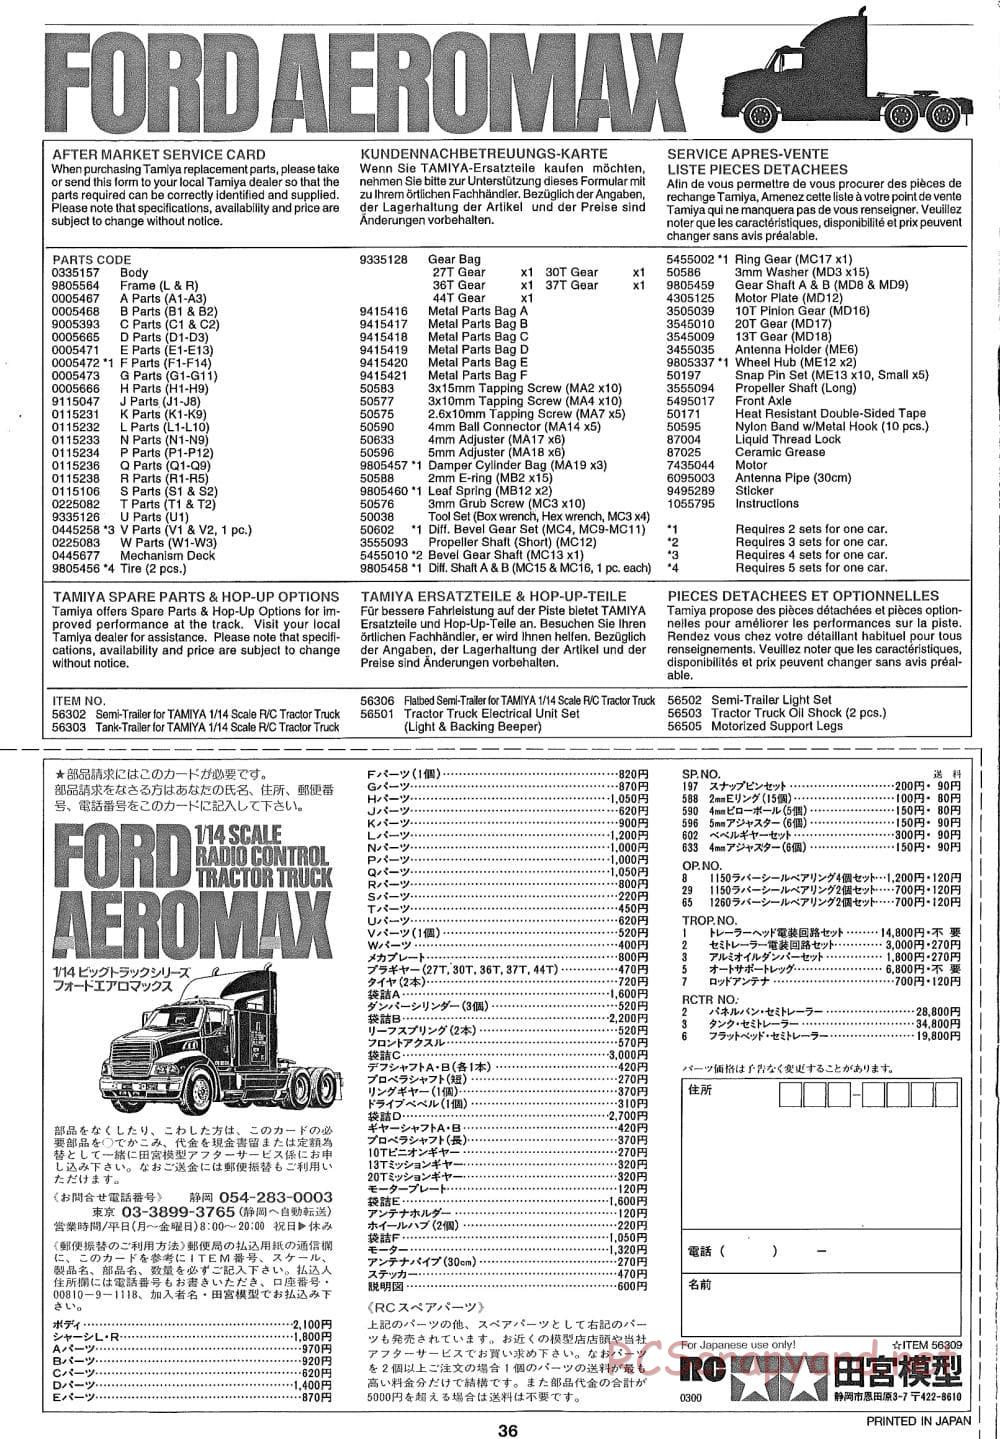 Tamiya - Ford Aeromax - Manual - Page 36